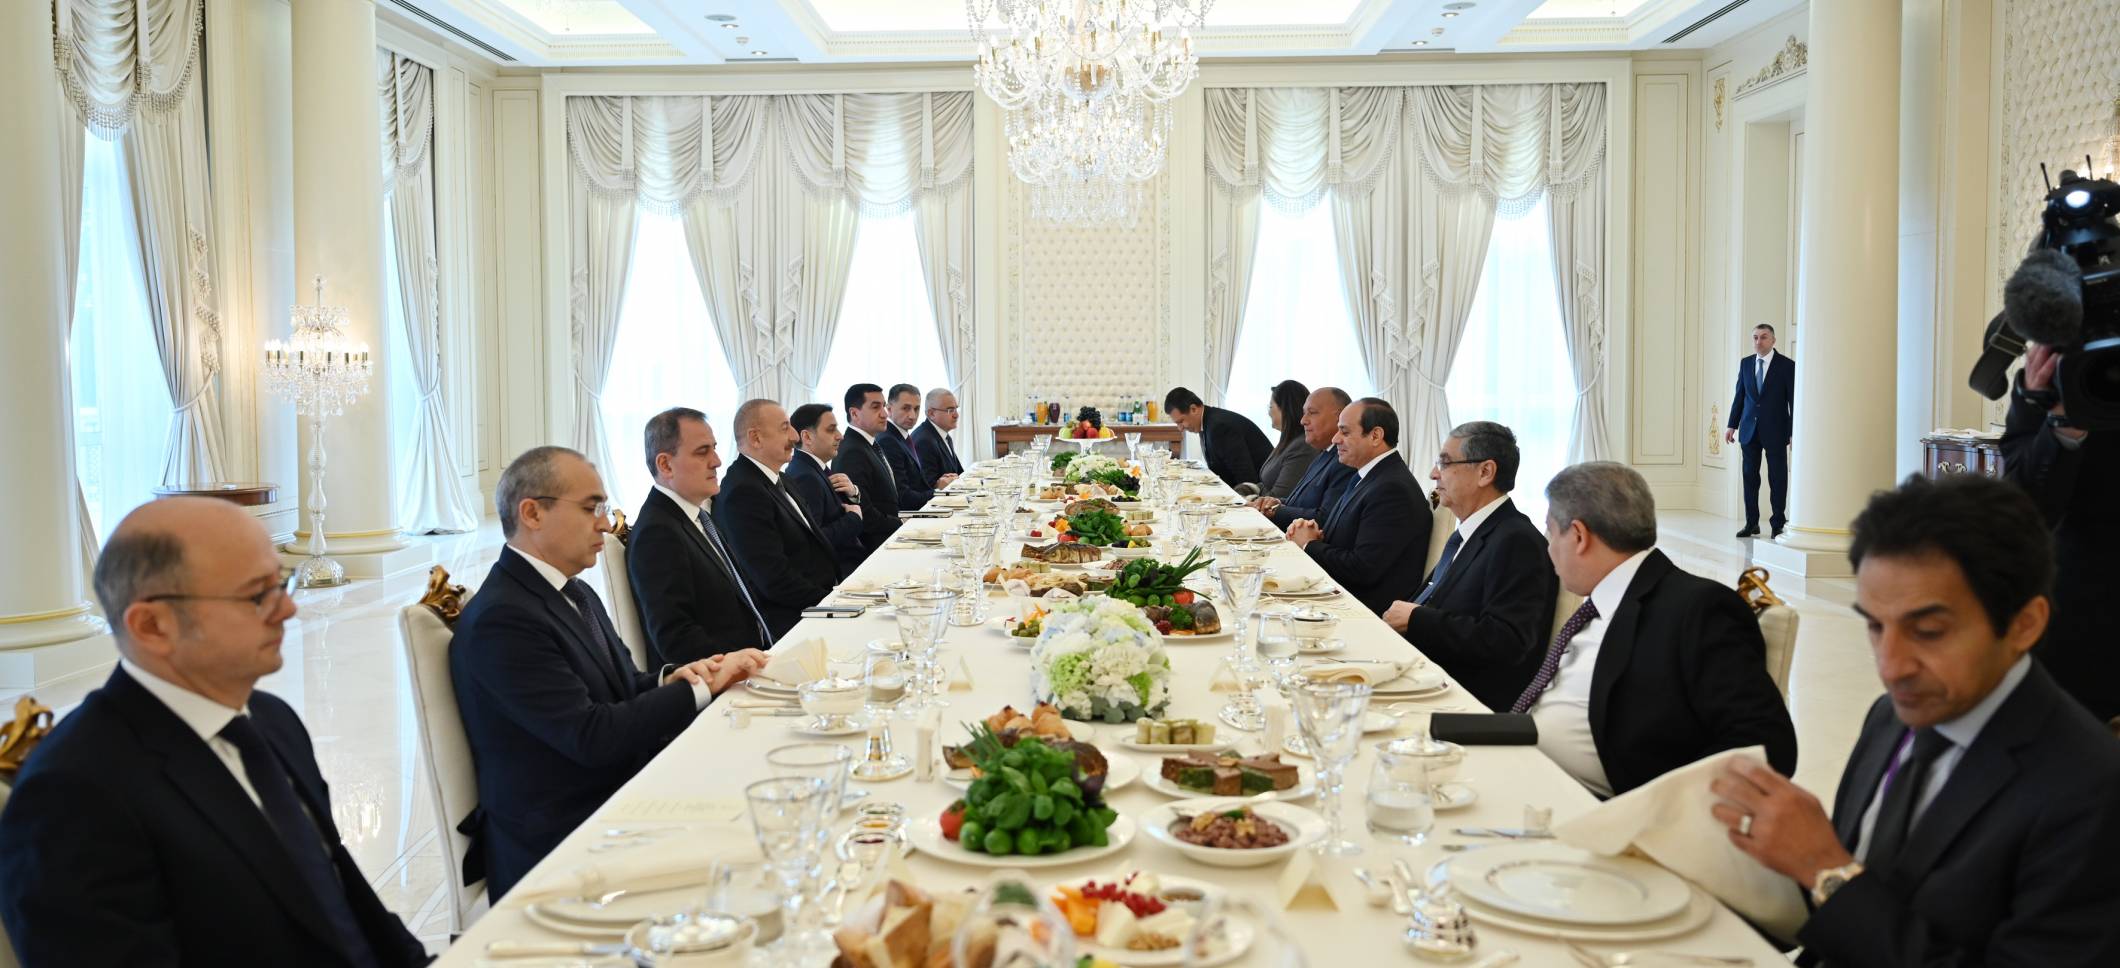 Dinner was hosted on behalf of President Ilham Aliyev in honor of President of Egypt Abdel Fattah El-Sisi